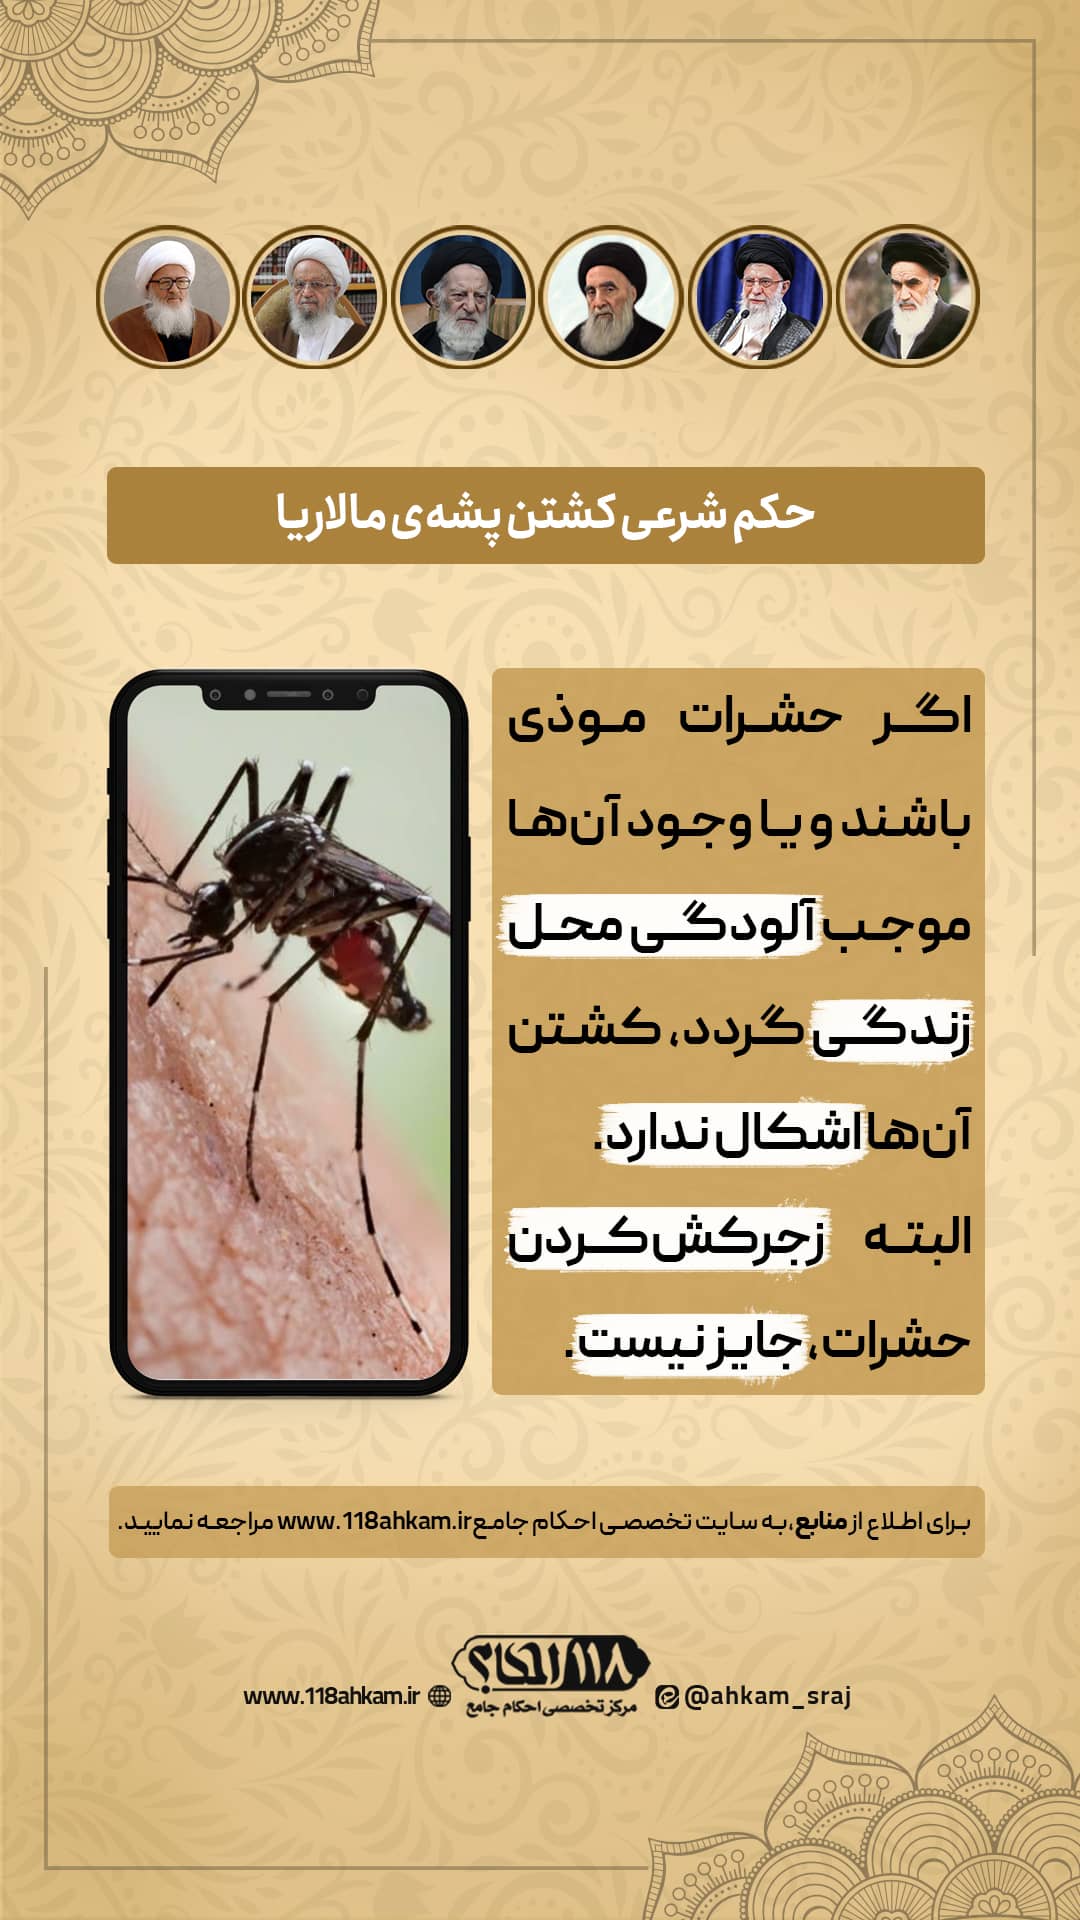 حکم شرعی کشتن حشره مالاریا " به مناسبت ۲۵ آوریل، روز جهانی مالاریا "